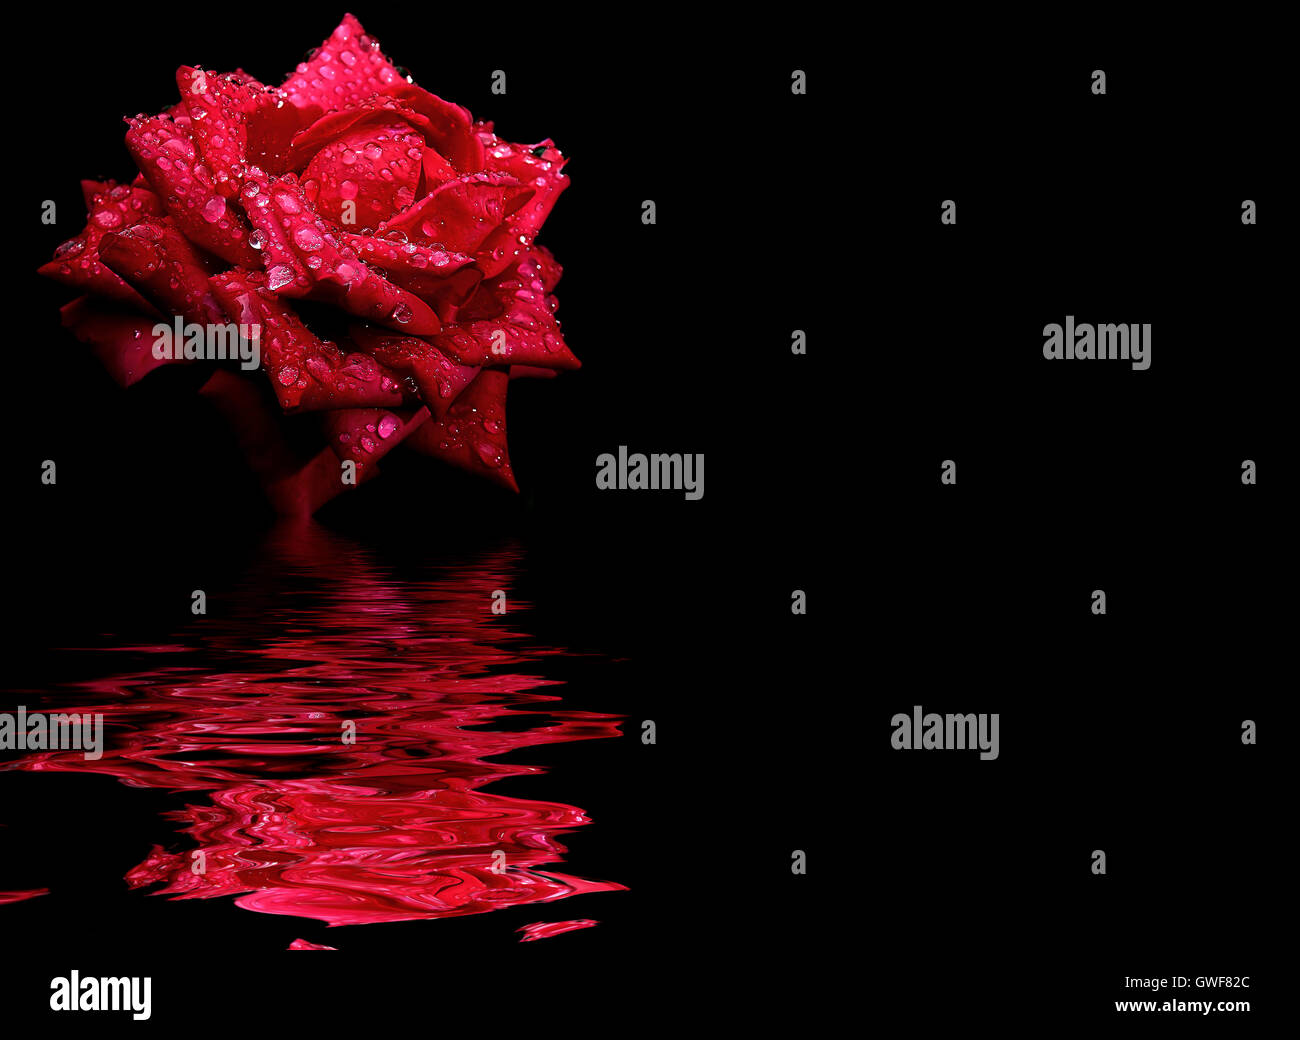 Contexte : Floral fleur rose rouge isolé sur une toile noire avec des reflets dans l'eau surface ondulée Banque D'Images